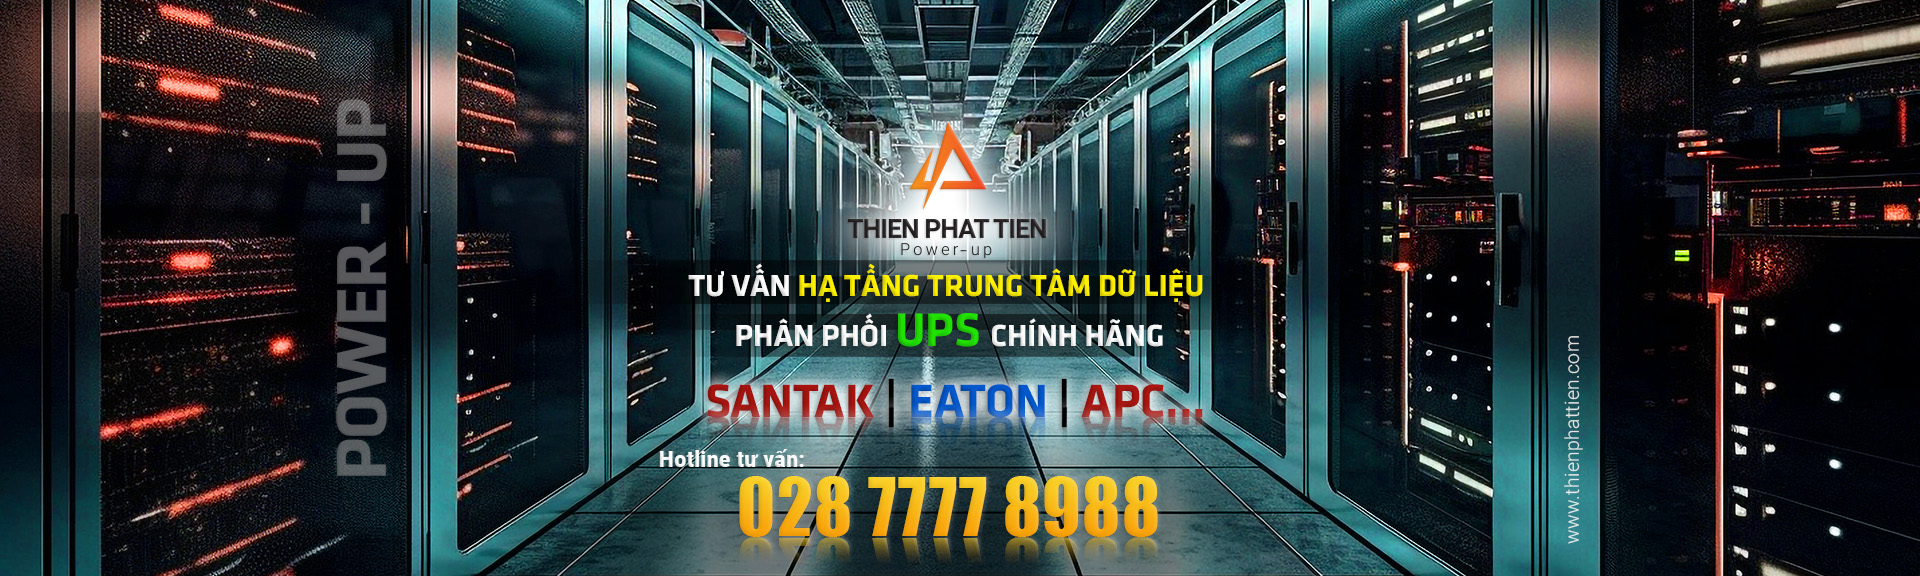 banner thien tien phat power up 03